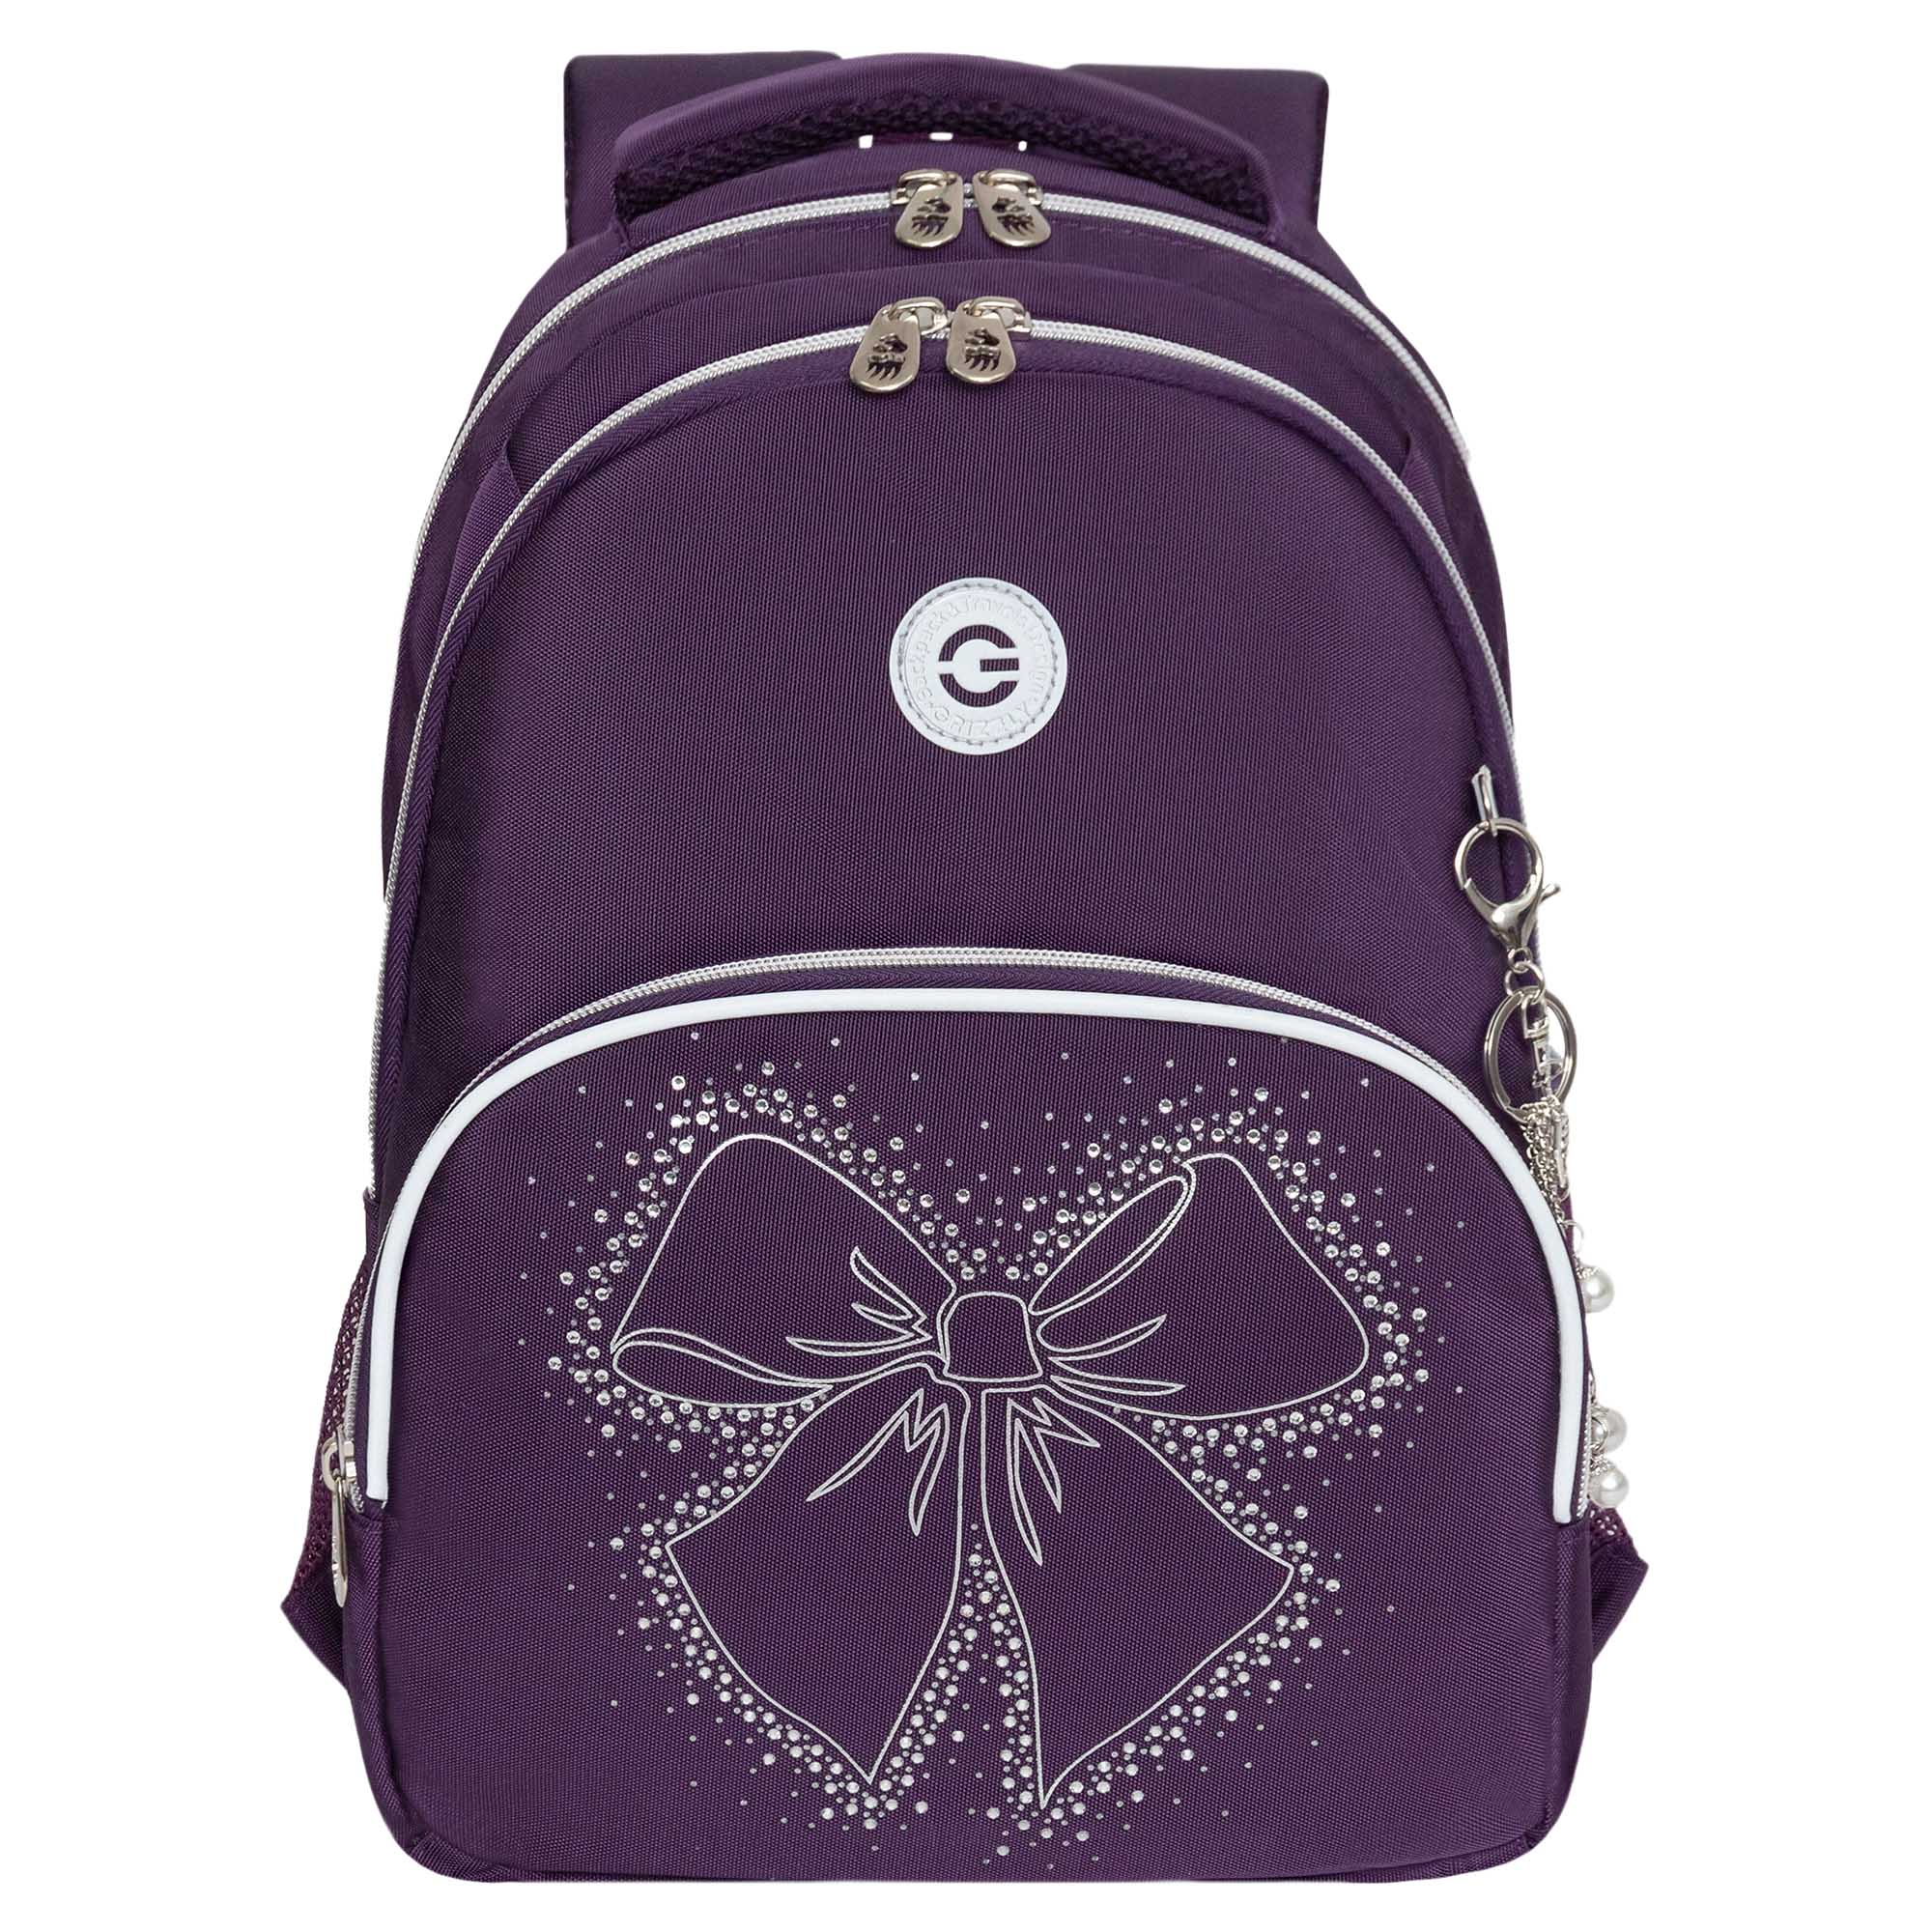 Рюкзак школьный GRIZZLY с карманом для ноутбука 13 анатомический фиолетовый RG-460-5, 3 рюкзак школьный grizzly 13 анатомический фиолетовый rg 464 3 1